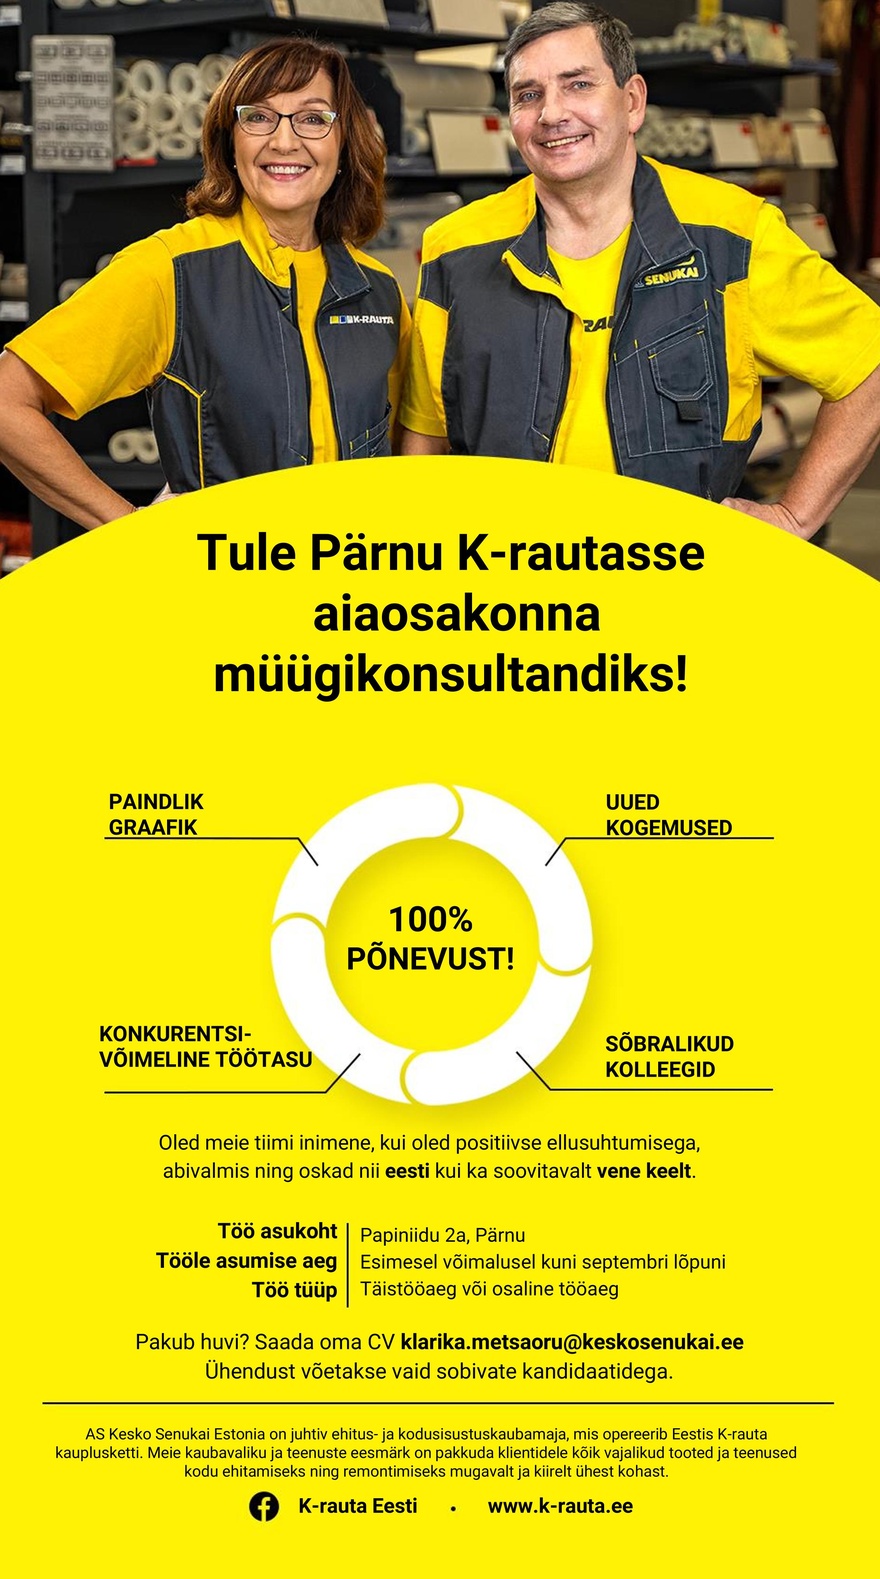 CVKeskus.ee klient Müügikonsultant Pärnu K-rauta aiaosakonda